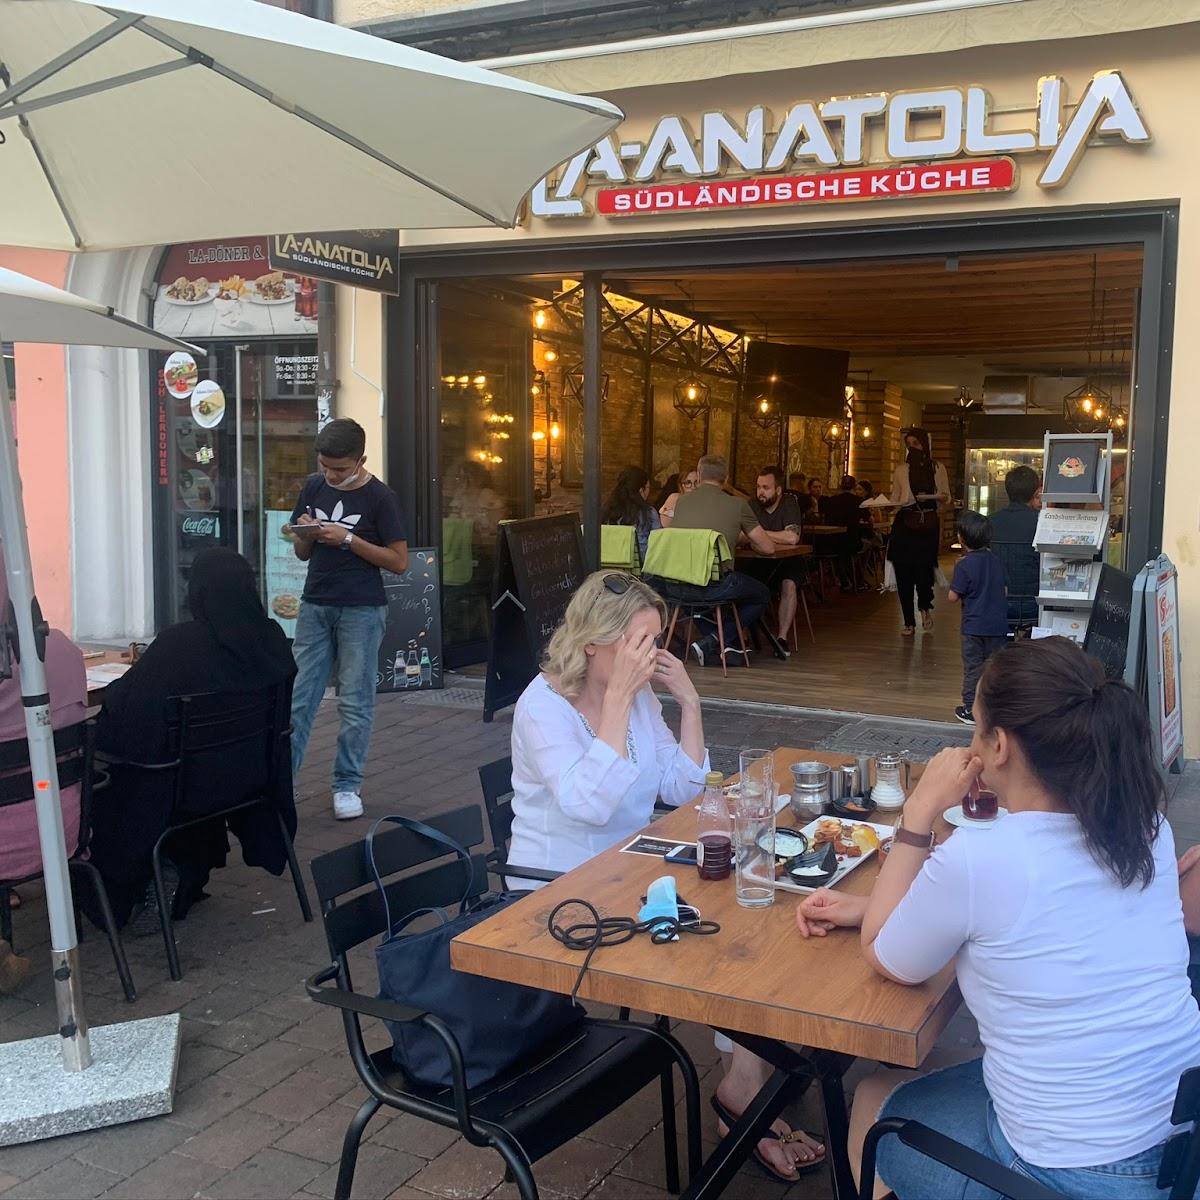 Restaurant "La Anatolia - Südländische Küche" in Landshut